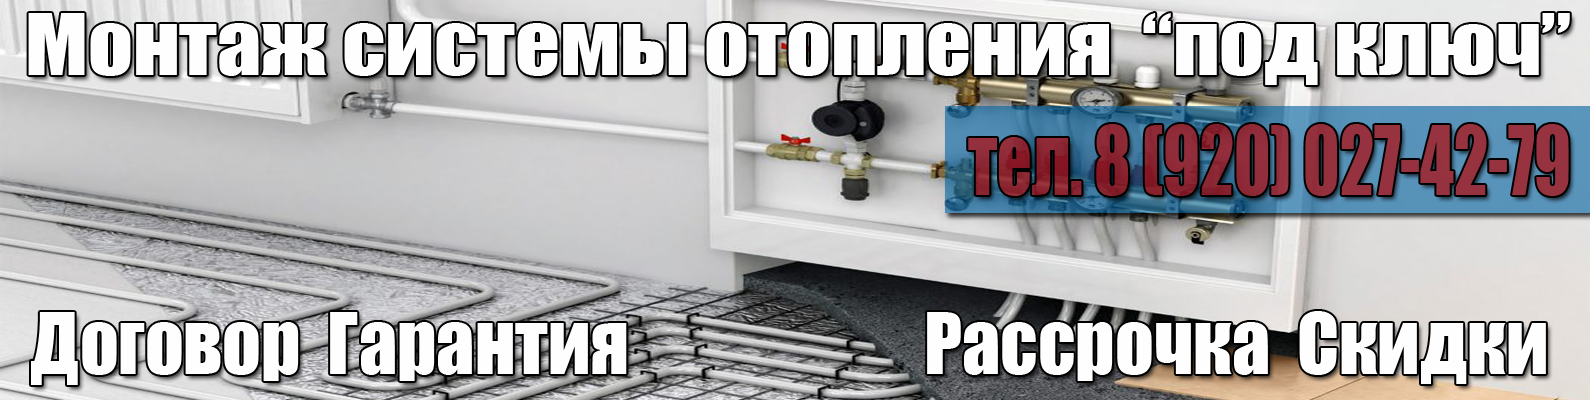 Заказать монтаж системы отопления для частного дома и коттеджа в Нижнем Новгороде и Нижегородской области